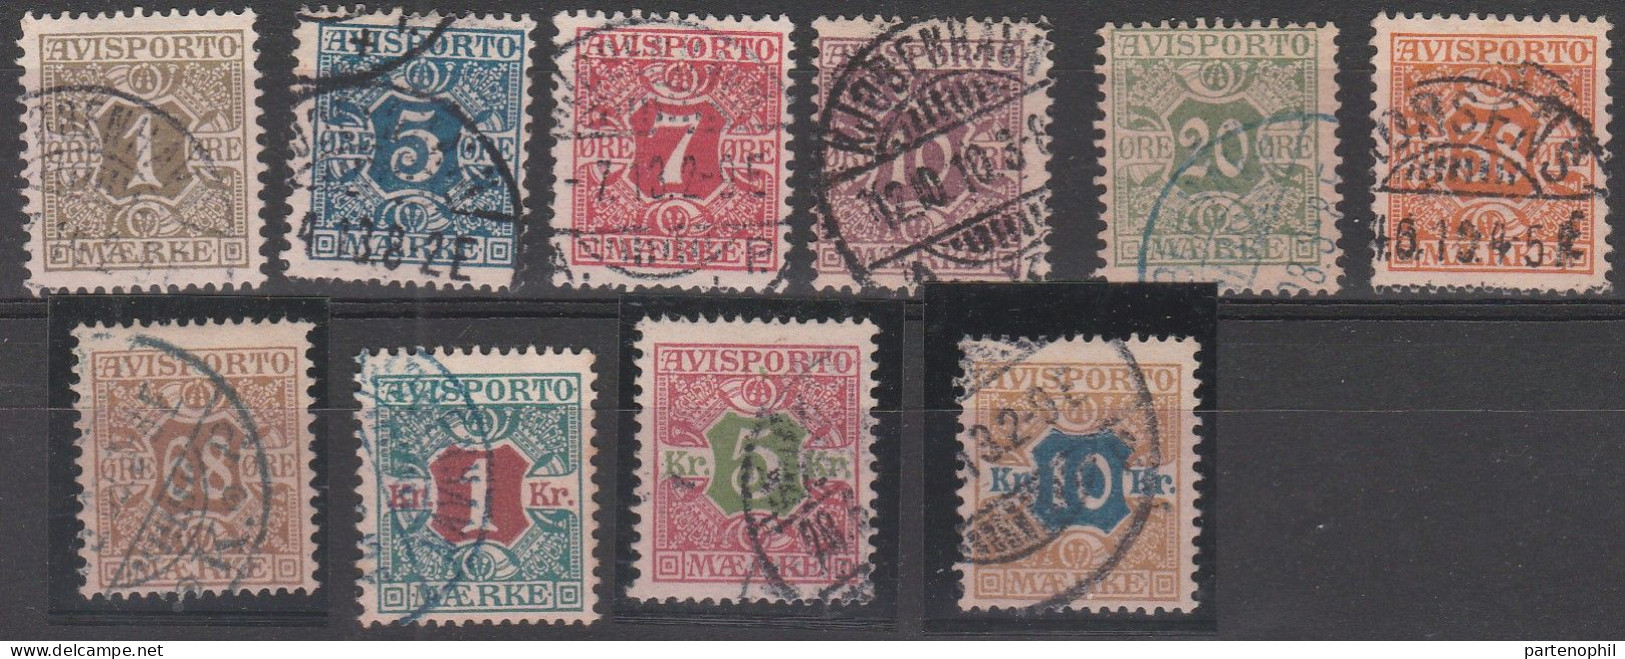 458 - Denmark Danimarca 1907 - Giornali - Cifra Al Centro N. 1/10. Cat. € 180,00. SPL - Gebraucht